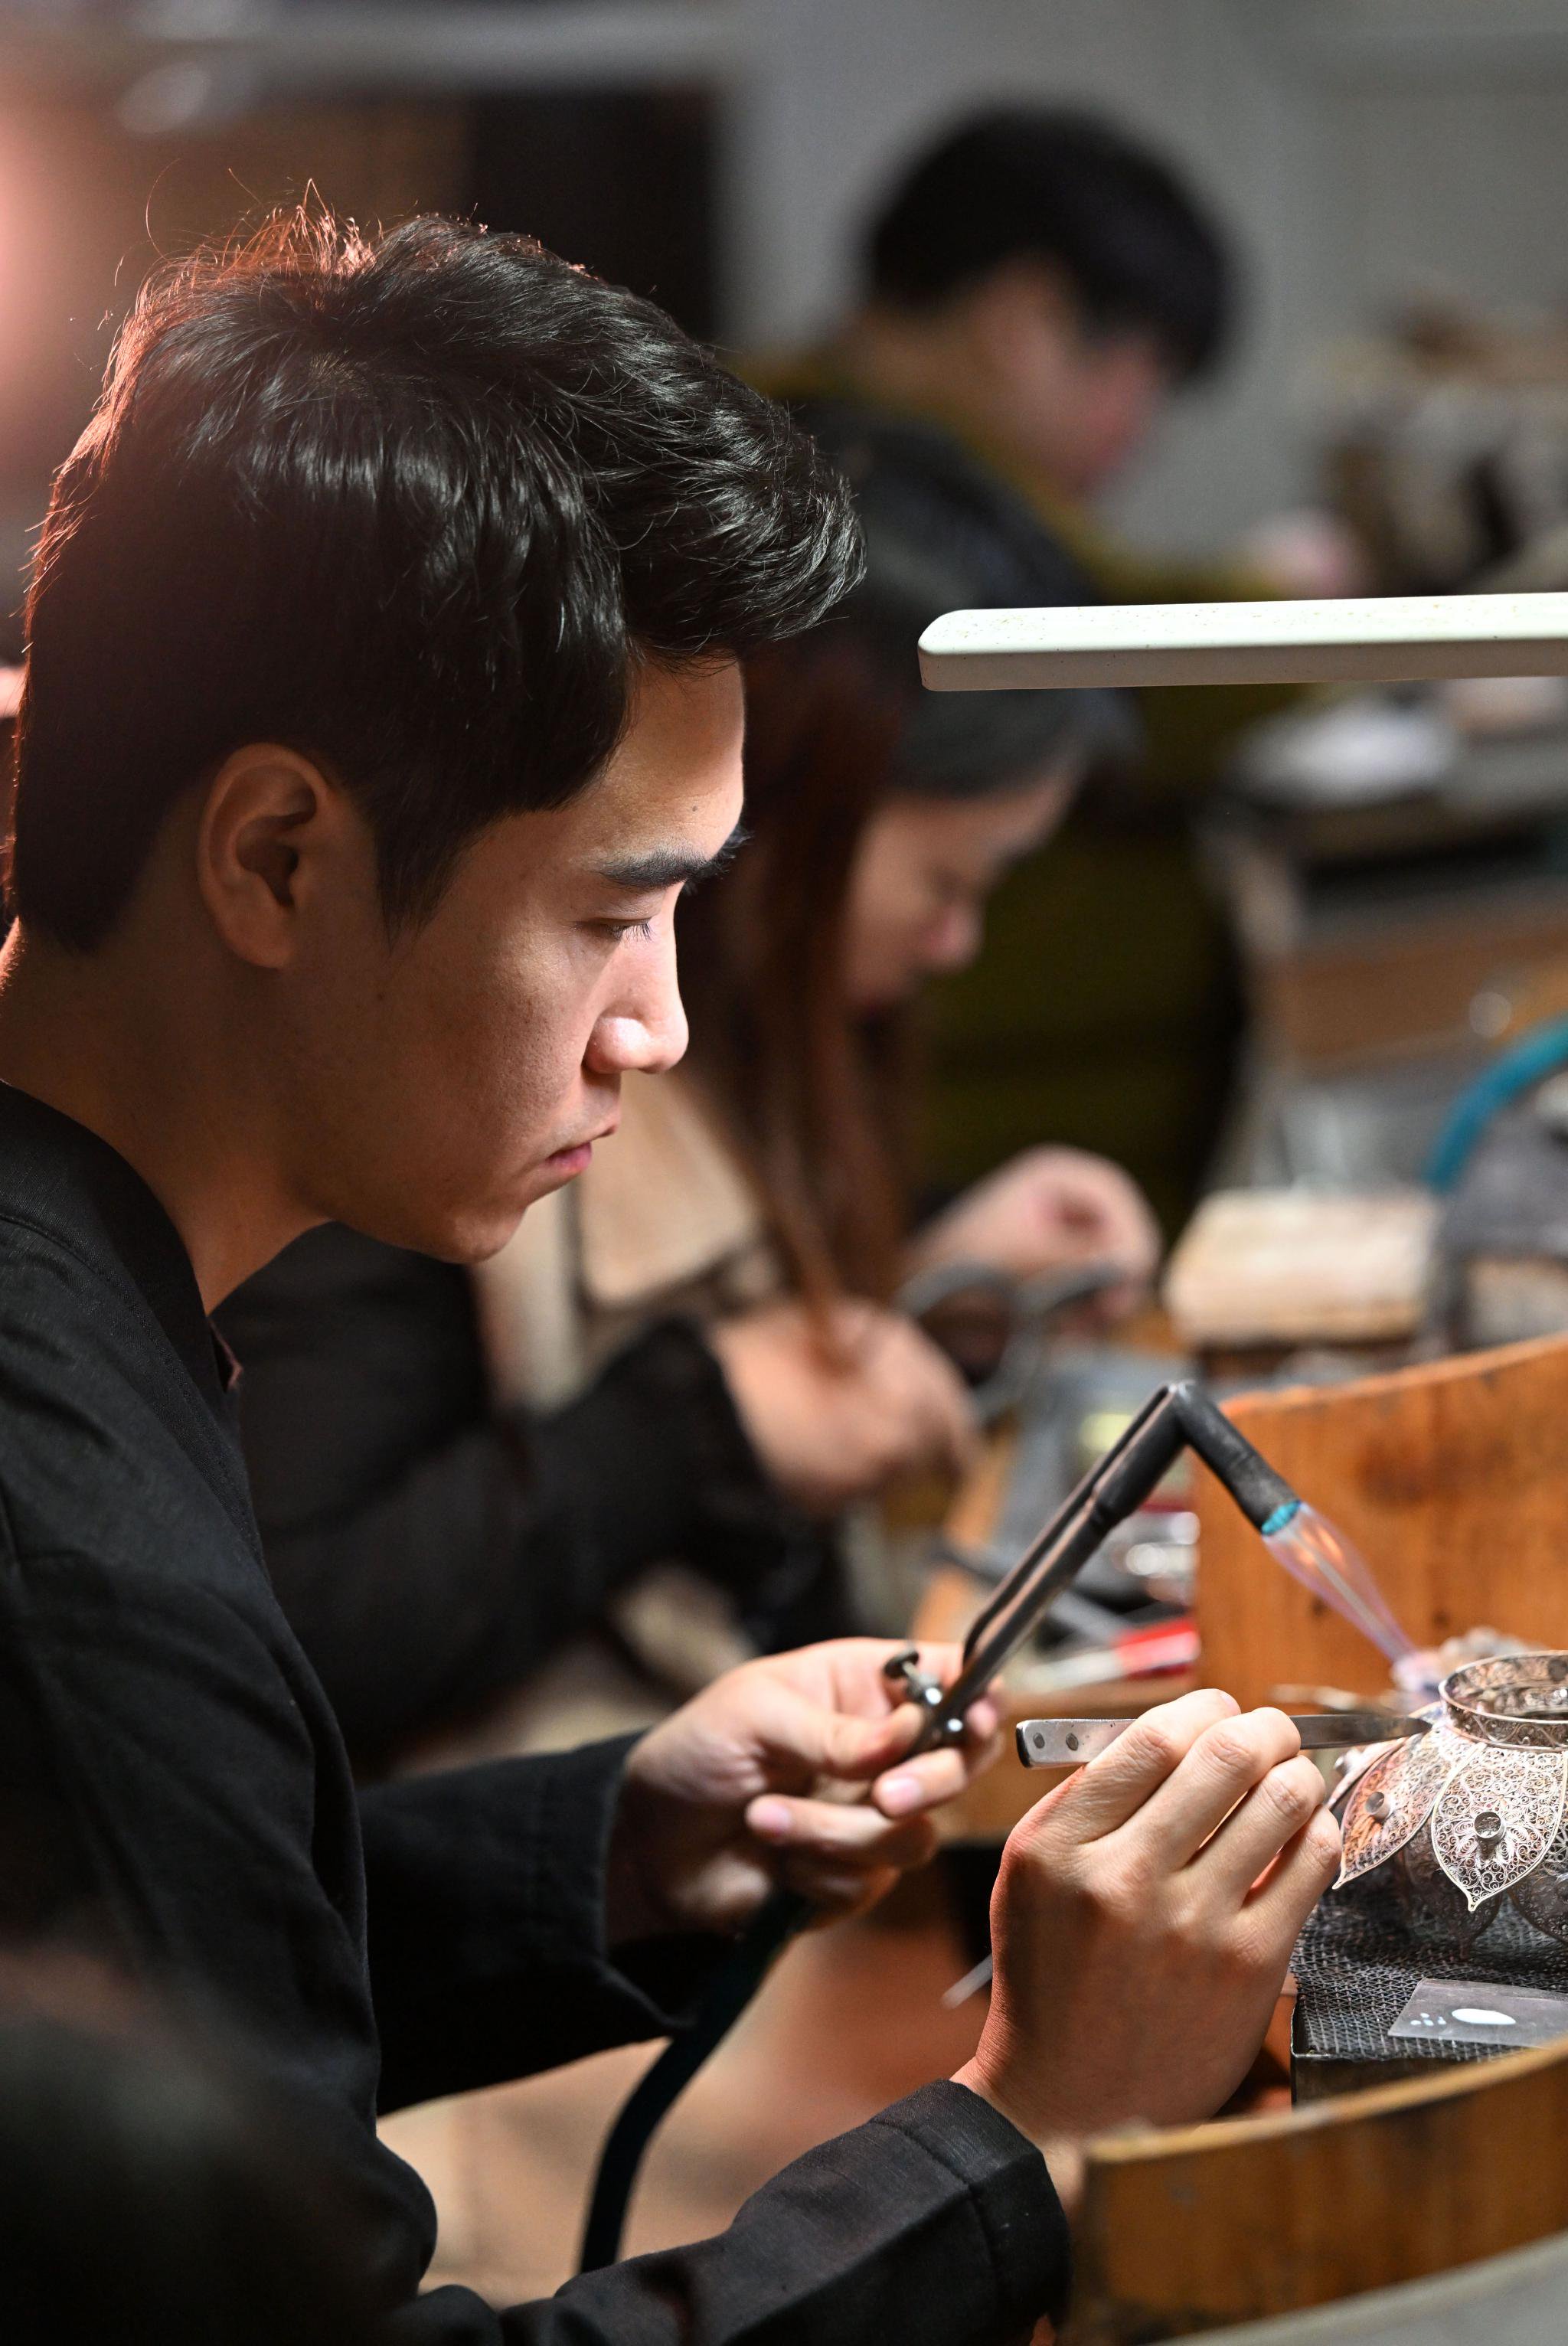 马赛在工作室内制作花丝镶嵌制品（3月19日摄）。新华社记者 李然 摄